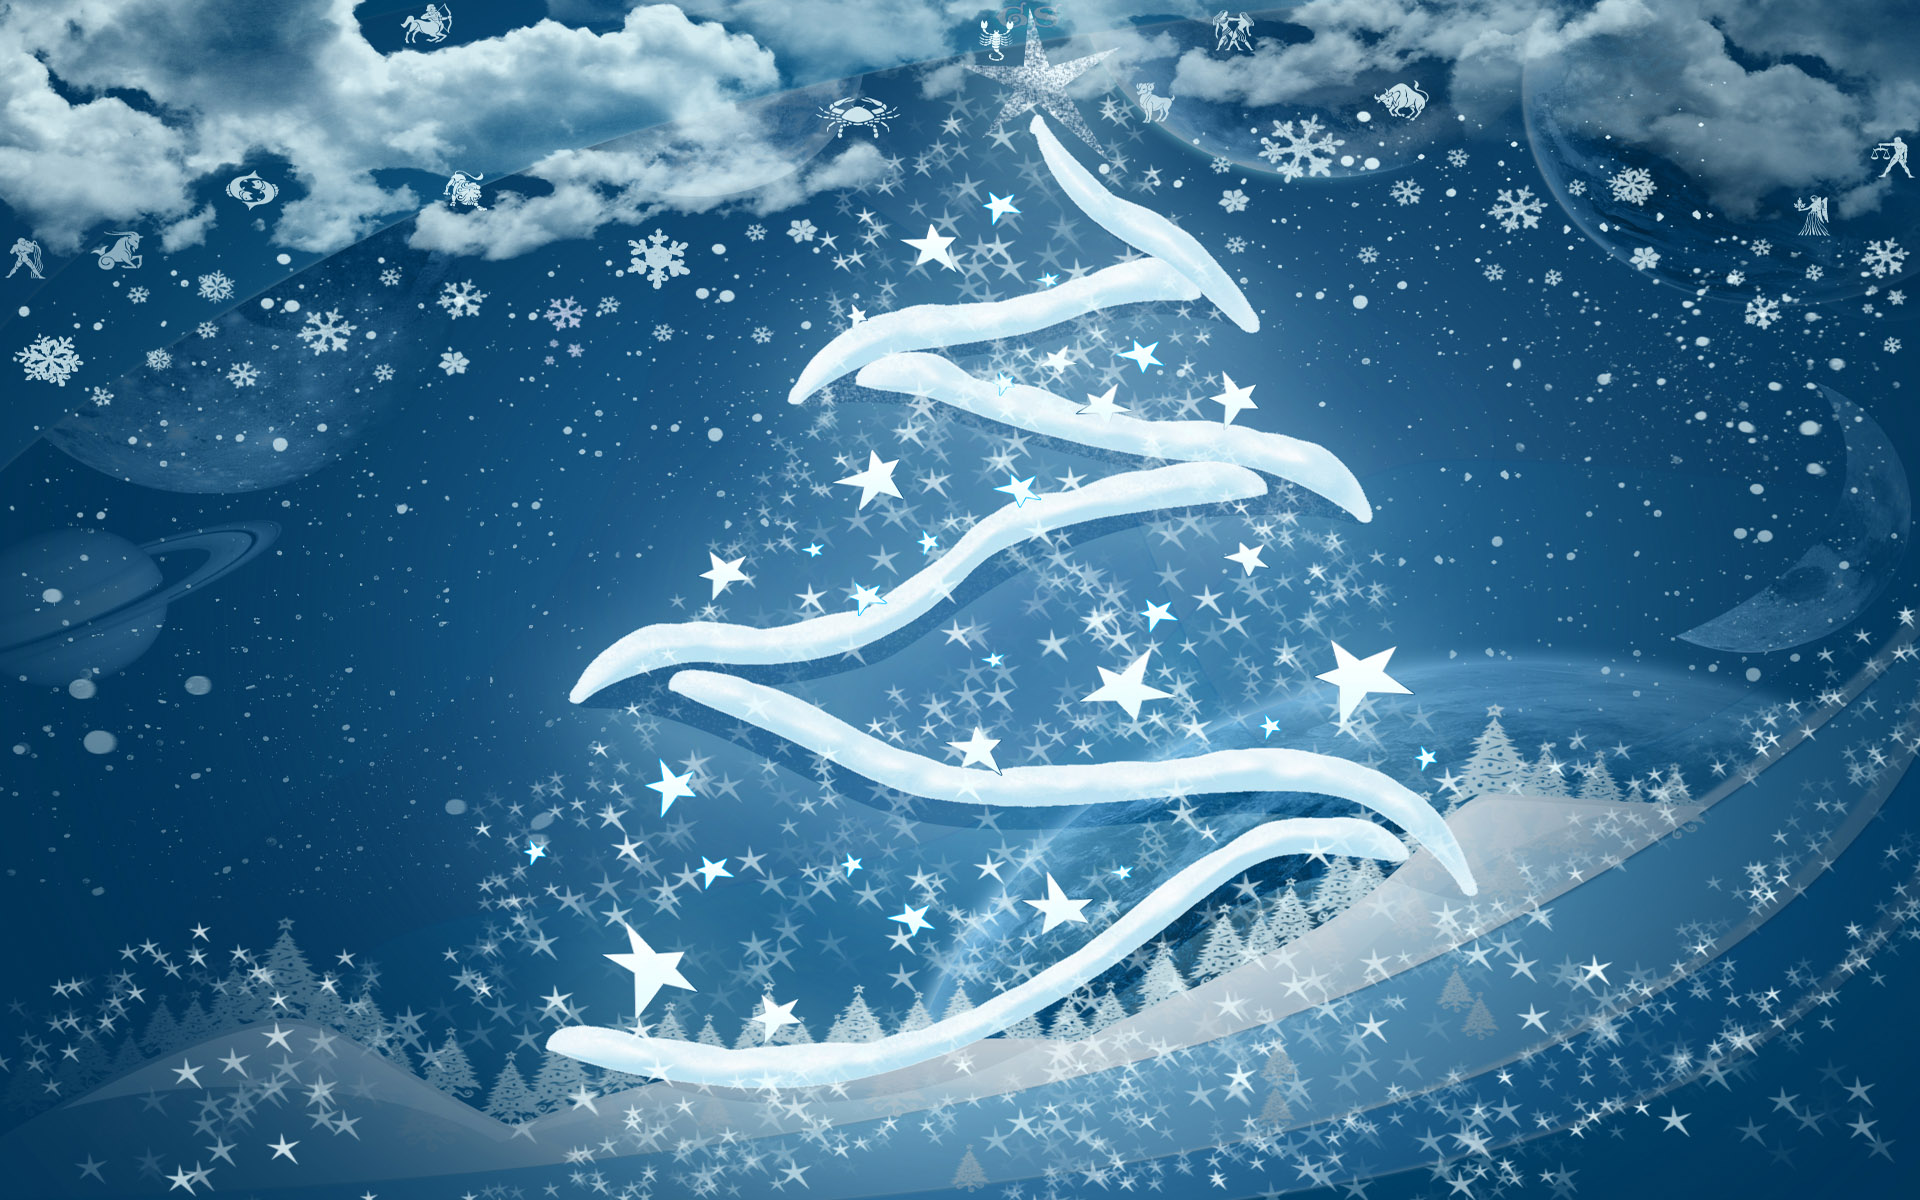 Рождественский и Новогодние текстуры, Новый год, рождество текстура, Christmas and New Year tree texture background